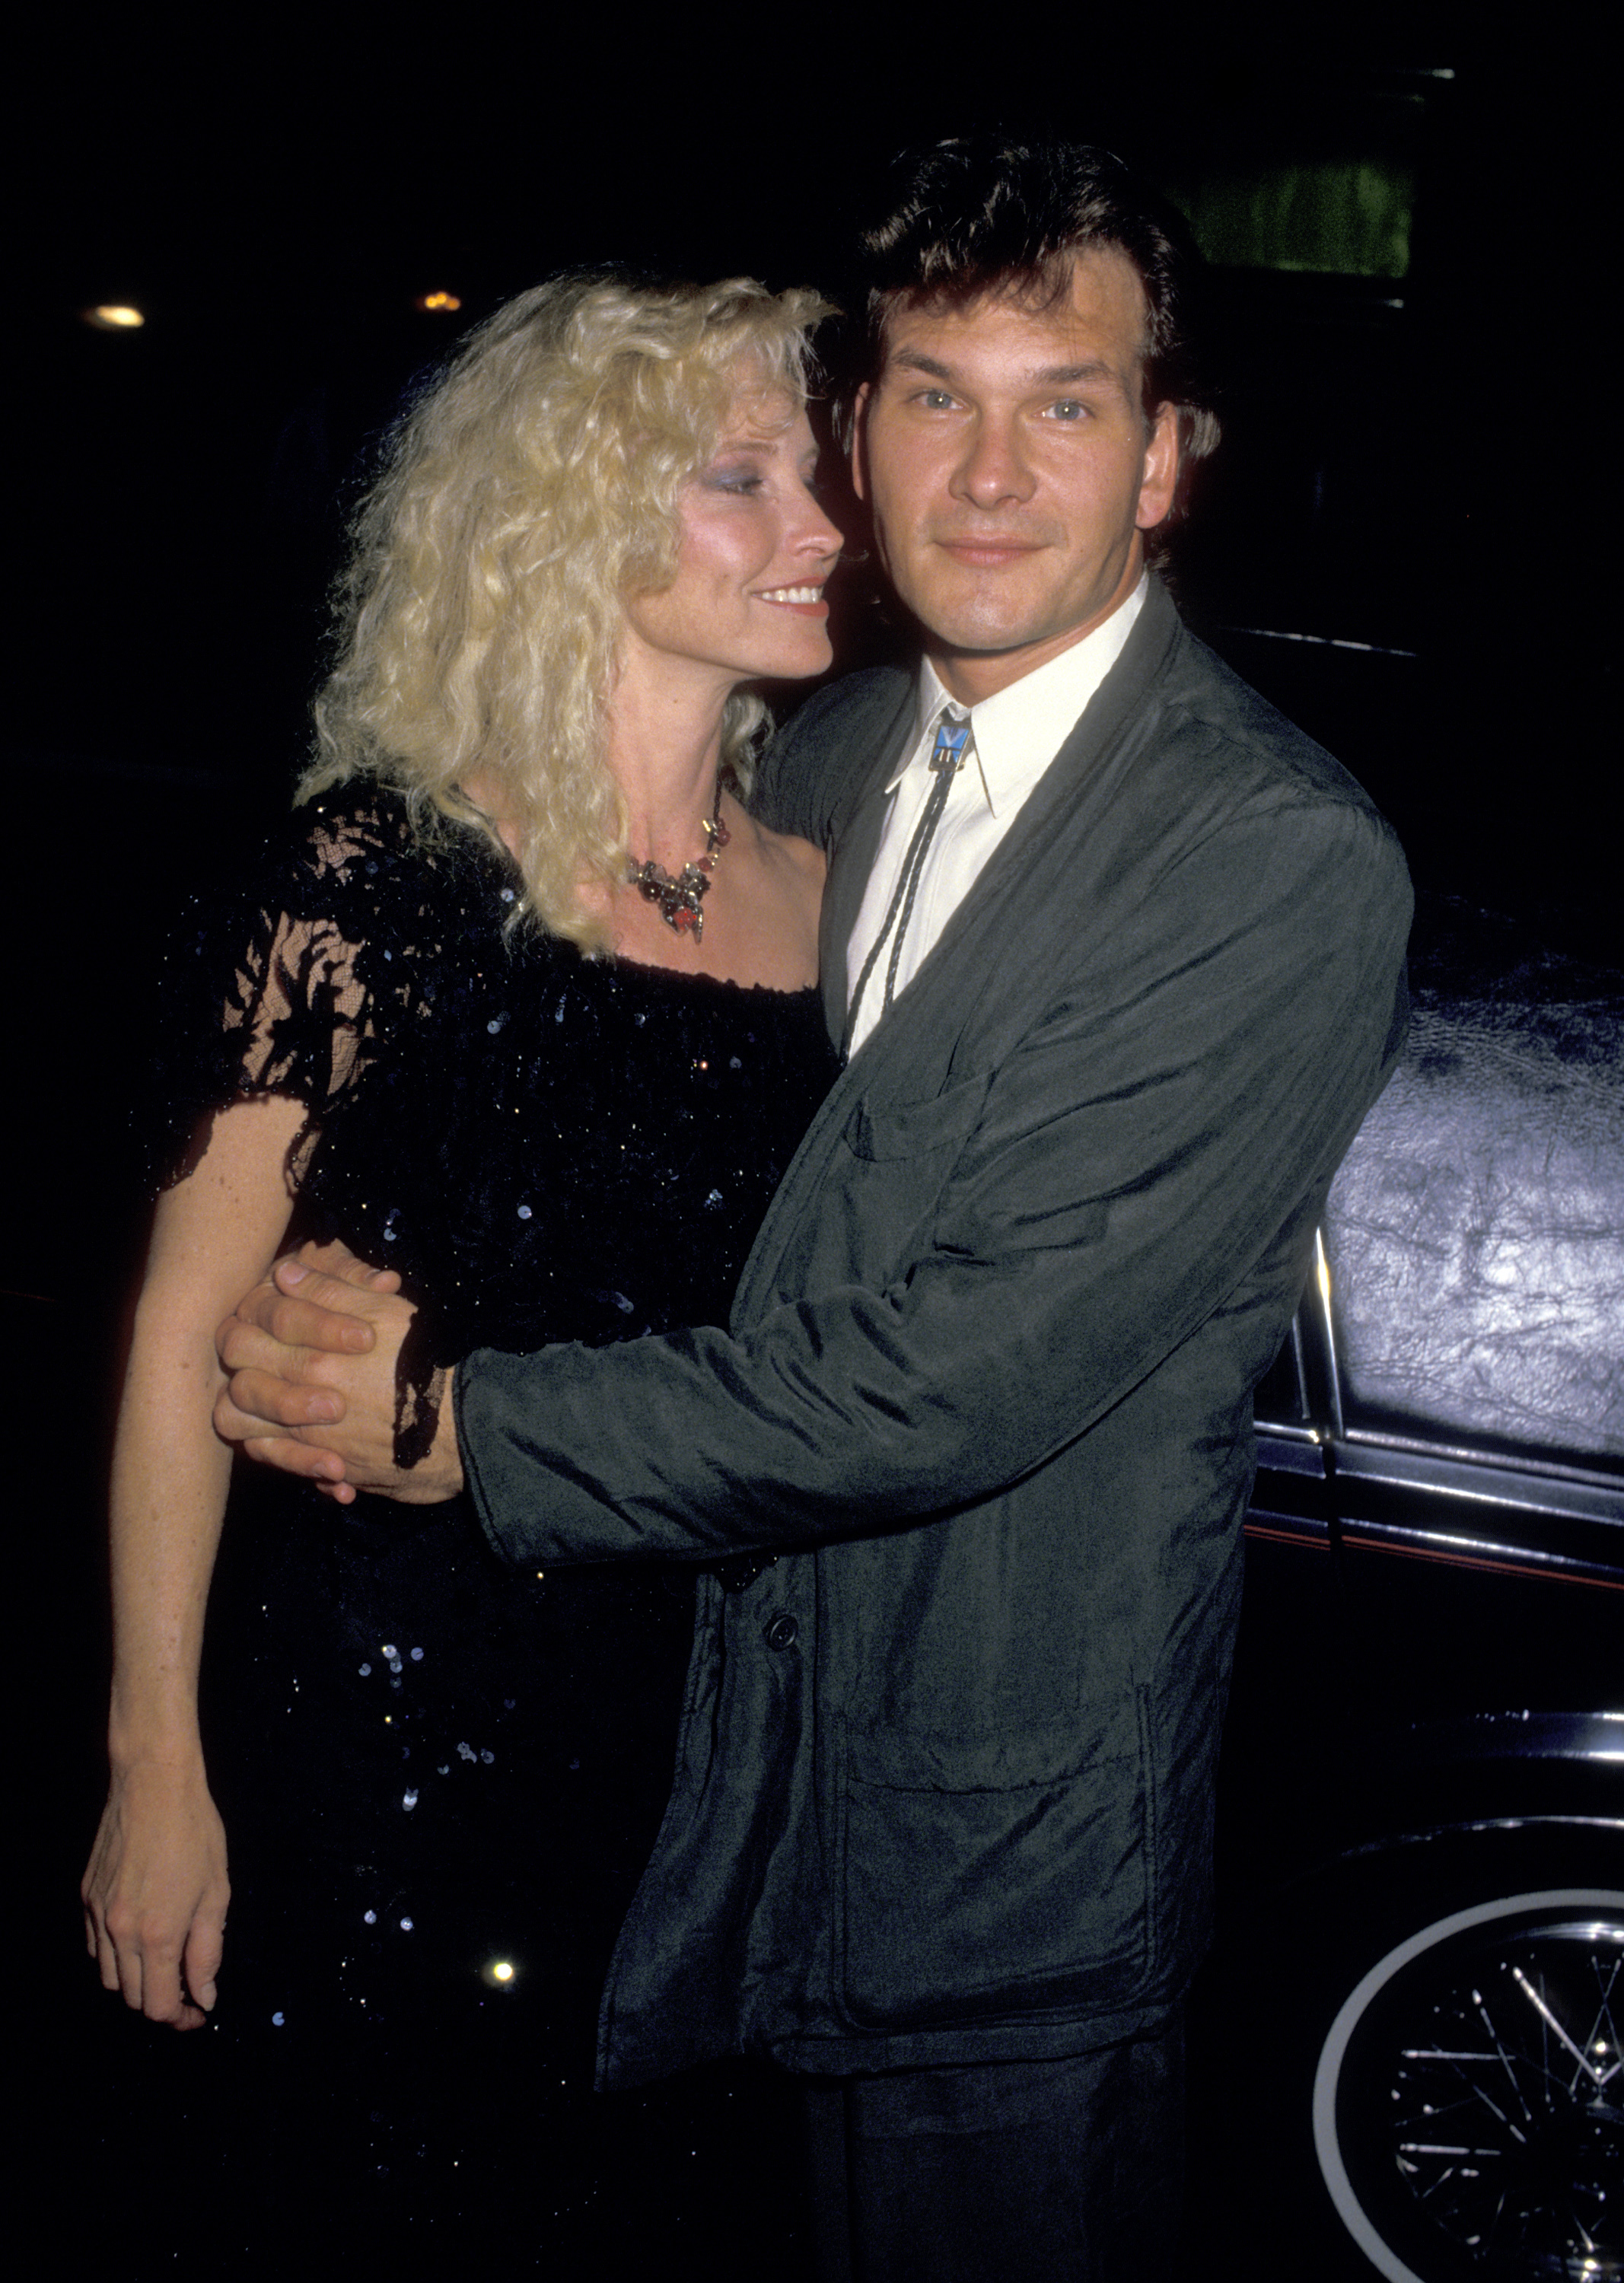 Lisa Niemi et Patrick Swayze à la première de "Dirty Dancing" le 17 août 1987 au Gemini Theater à New York | Source : Getty Images